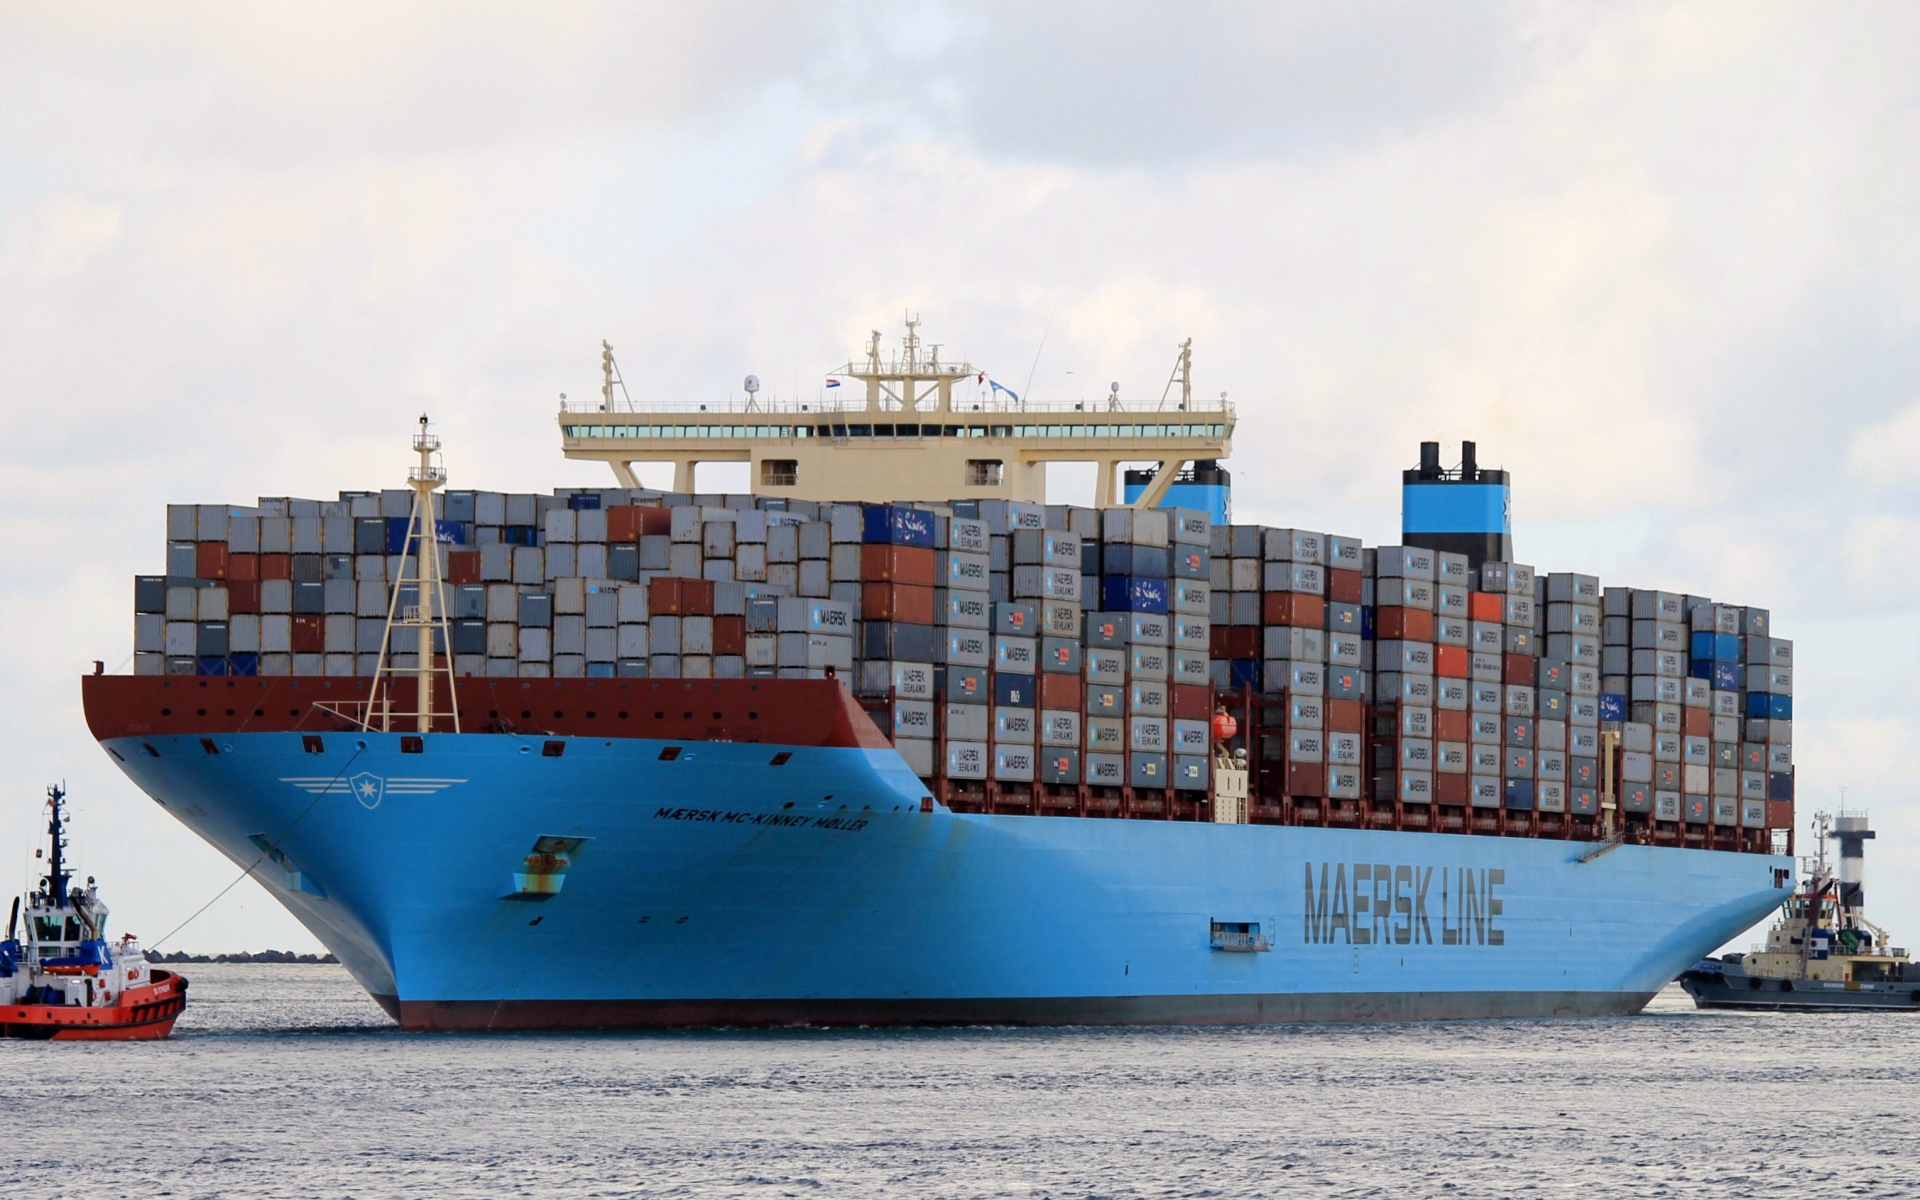 Картинки Maersk mc-kinney moller, крупнейший контейнерный корабль, daewoo кораблестроение и морская техника фото и обои на рабочий стол